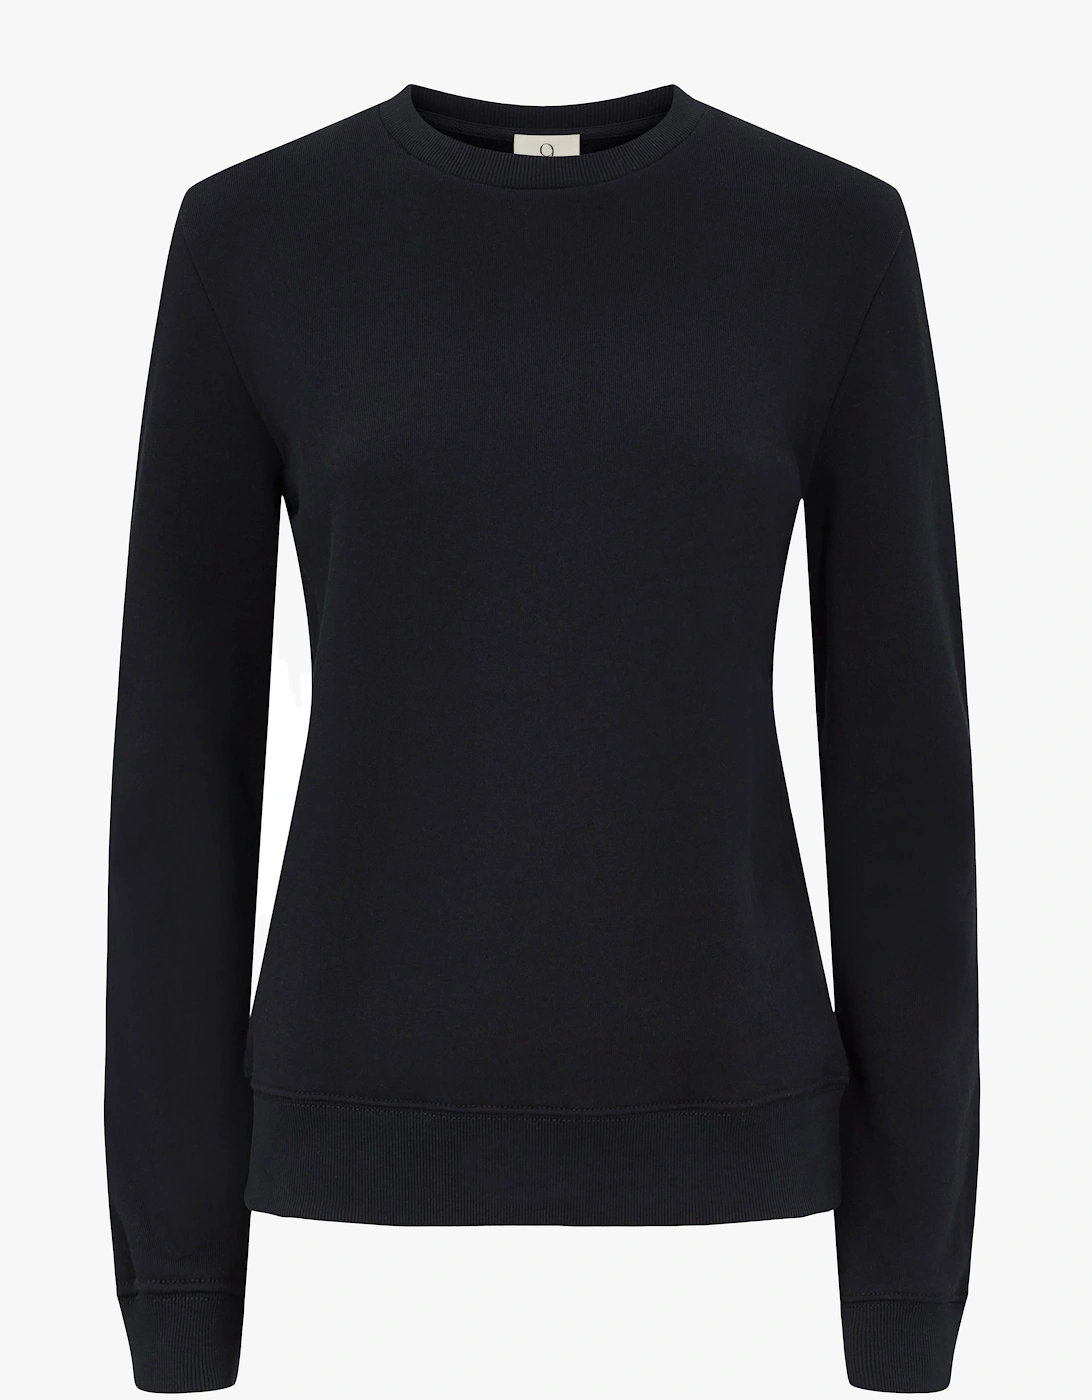 Kendall Sweatshirt in Black, 4 of 3